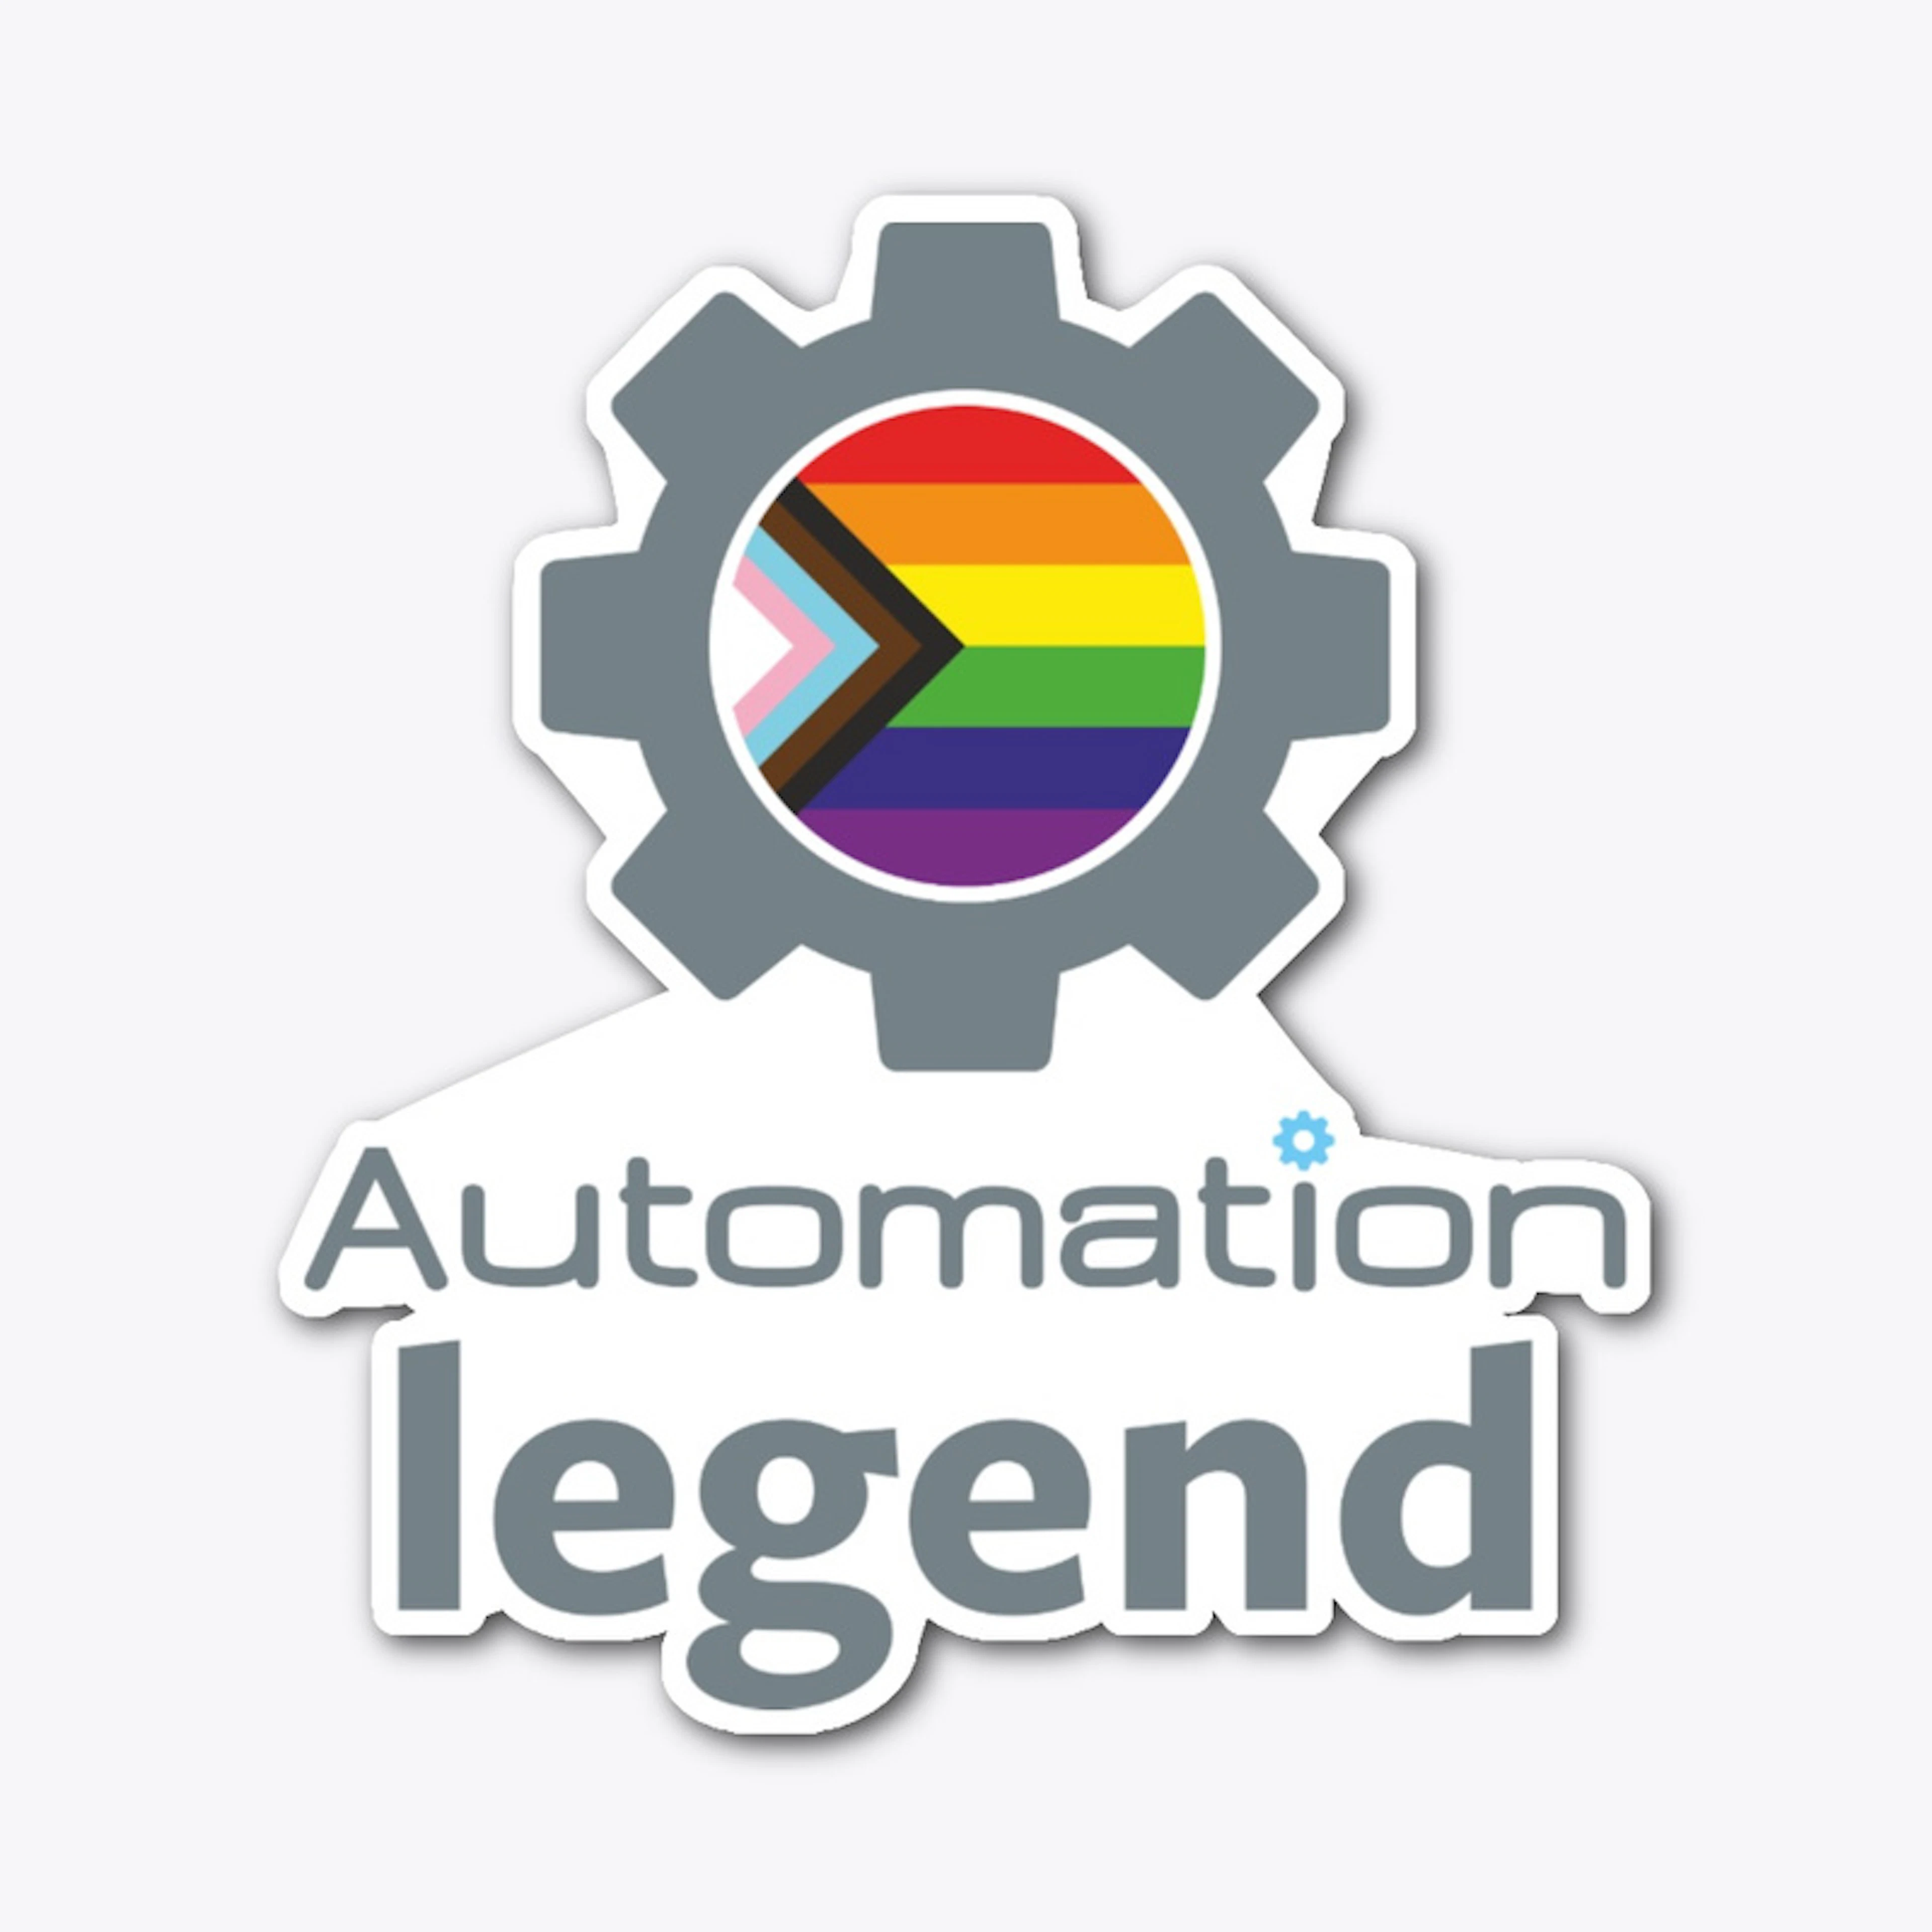 Automation Legend  LGBTQIA+